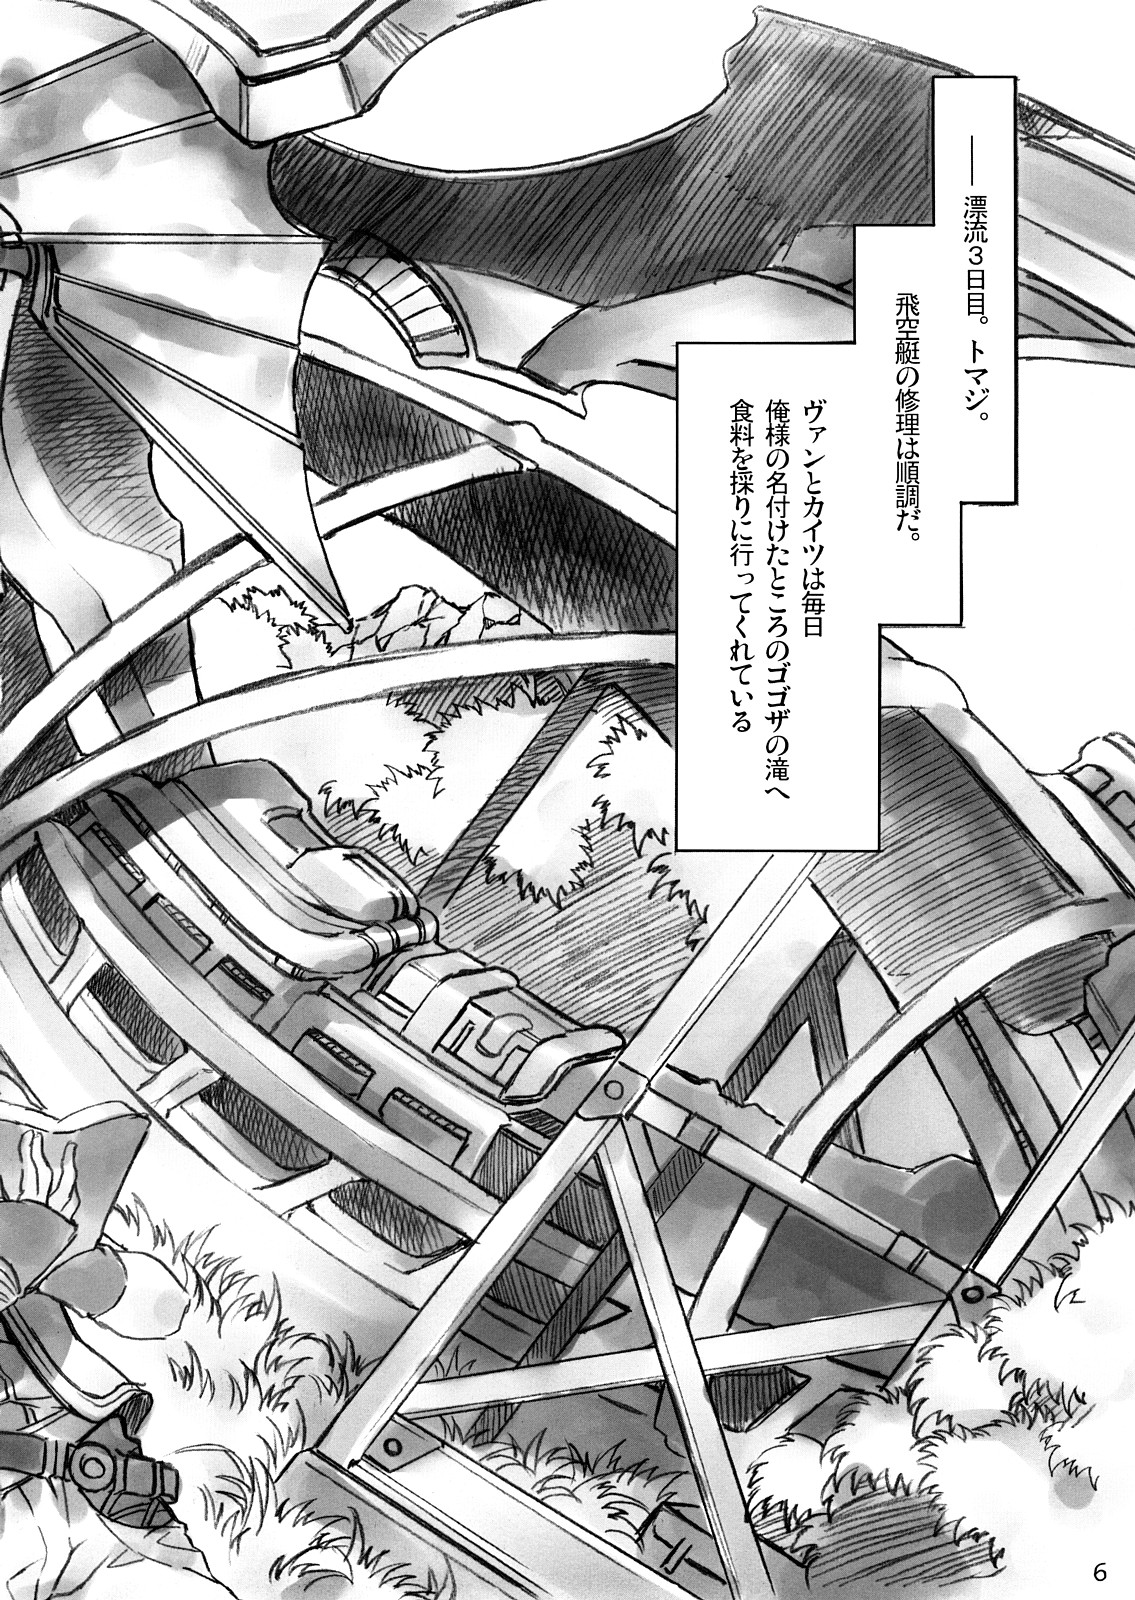 (SC36) [Alice no Takarabako (Mizuryu Kei)] Kokokara Fuzoku Date (Final Fantasy XII) page 5 full